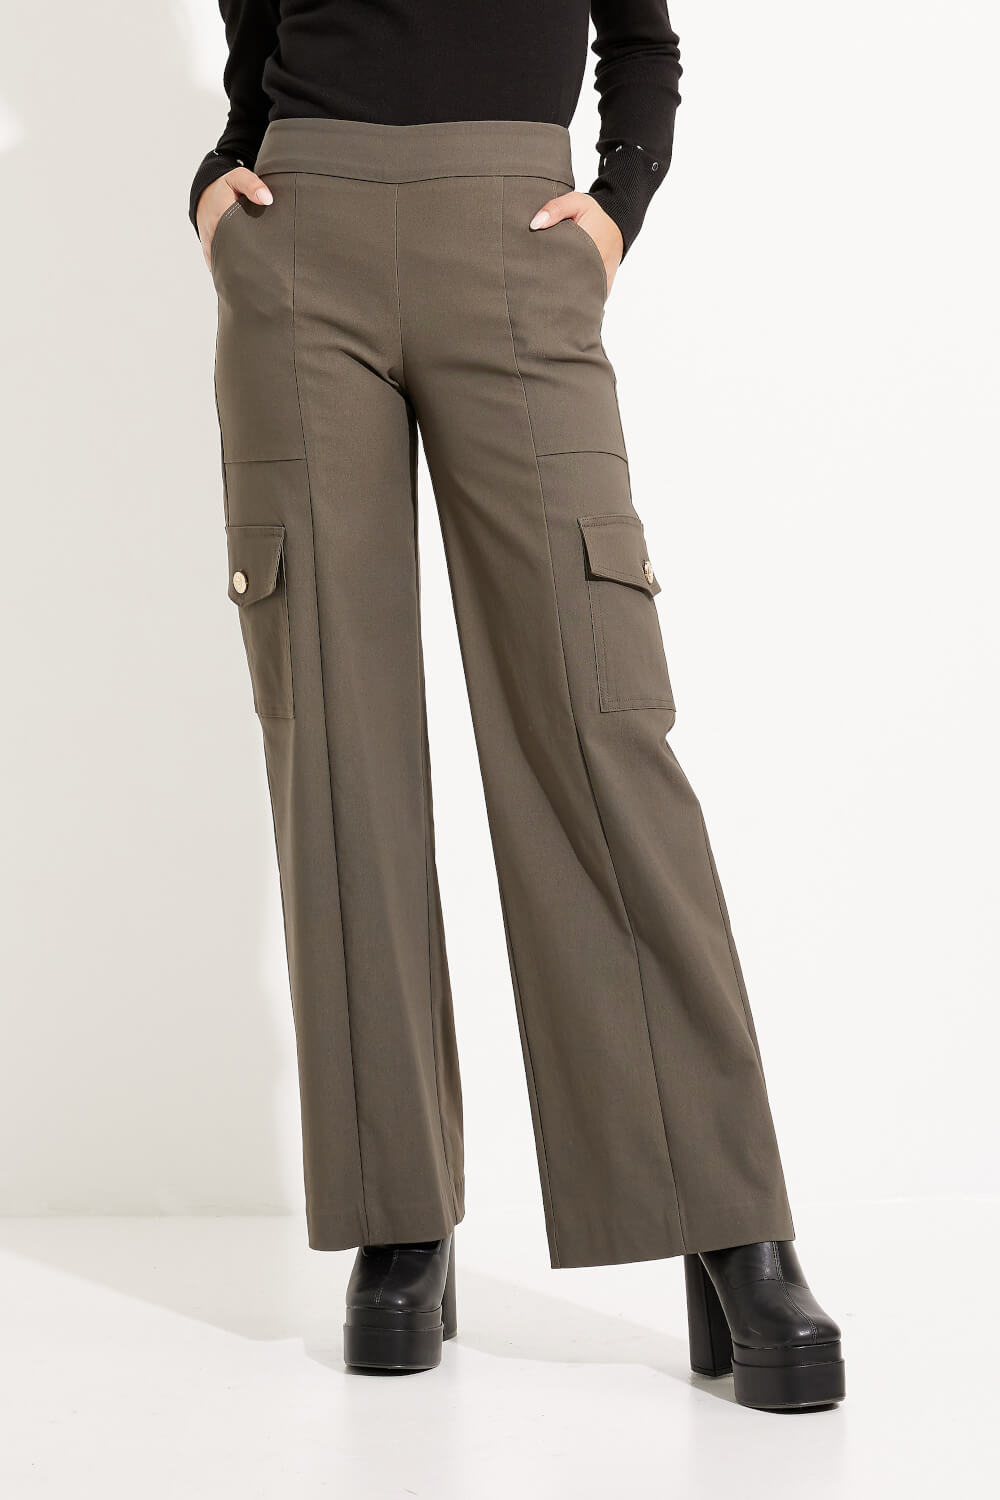 Pantalon bootcut modèle 233219. Avocat